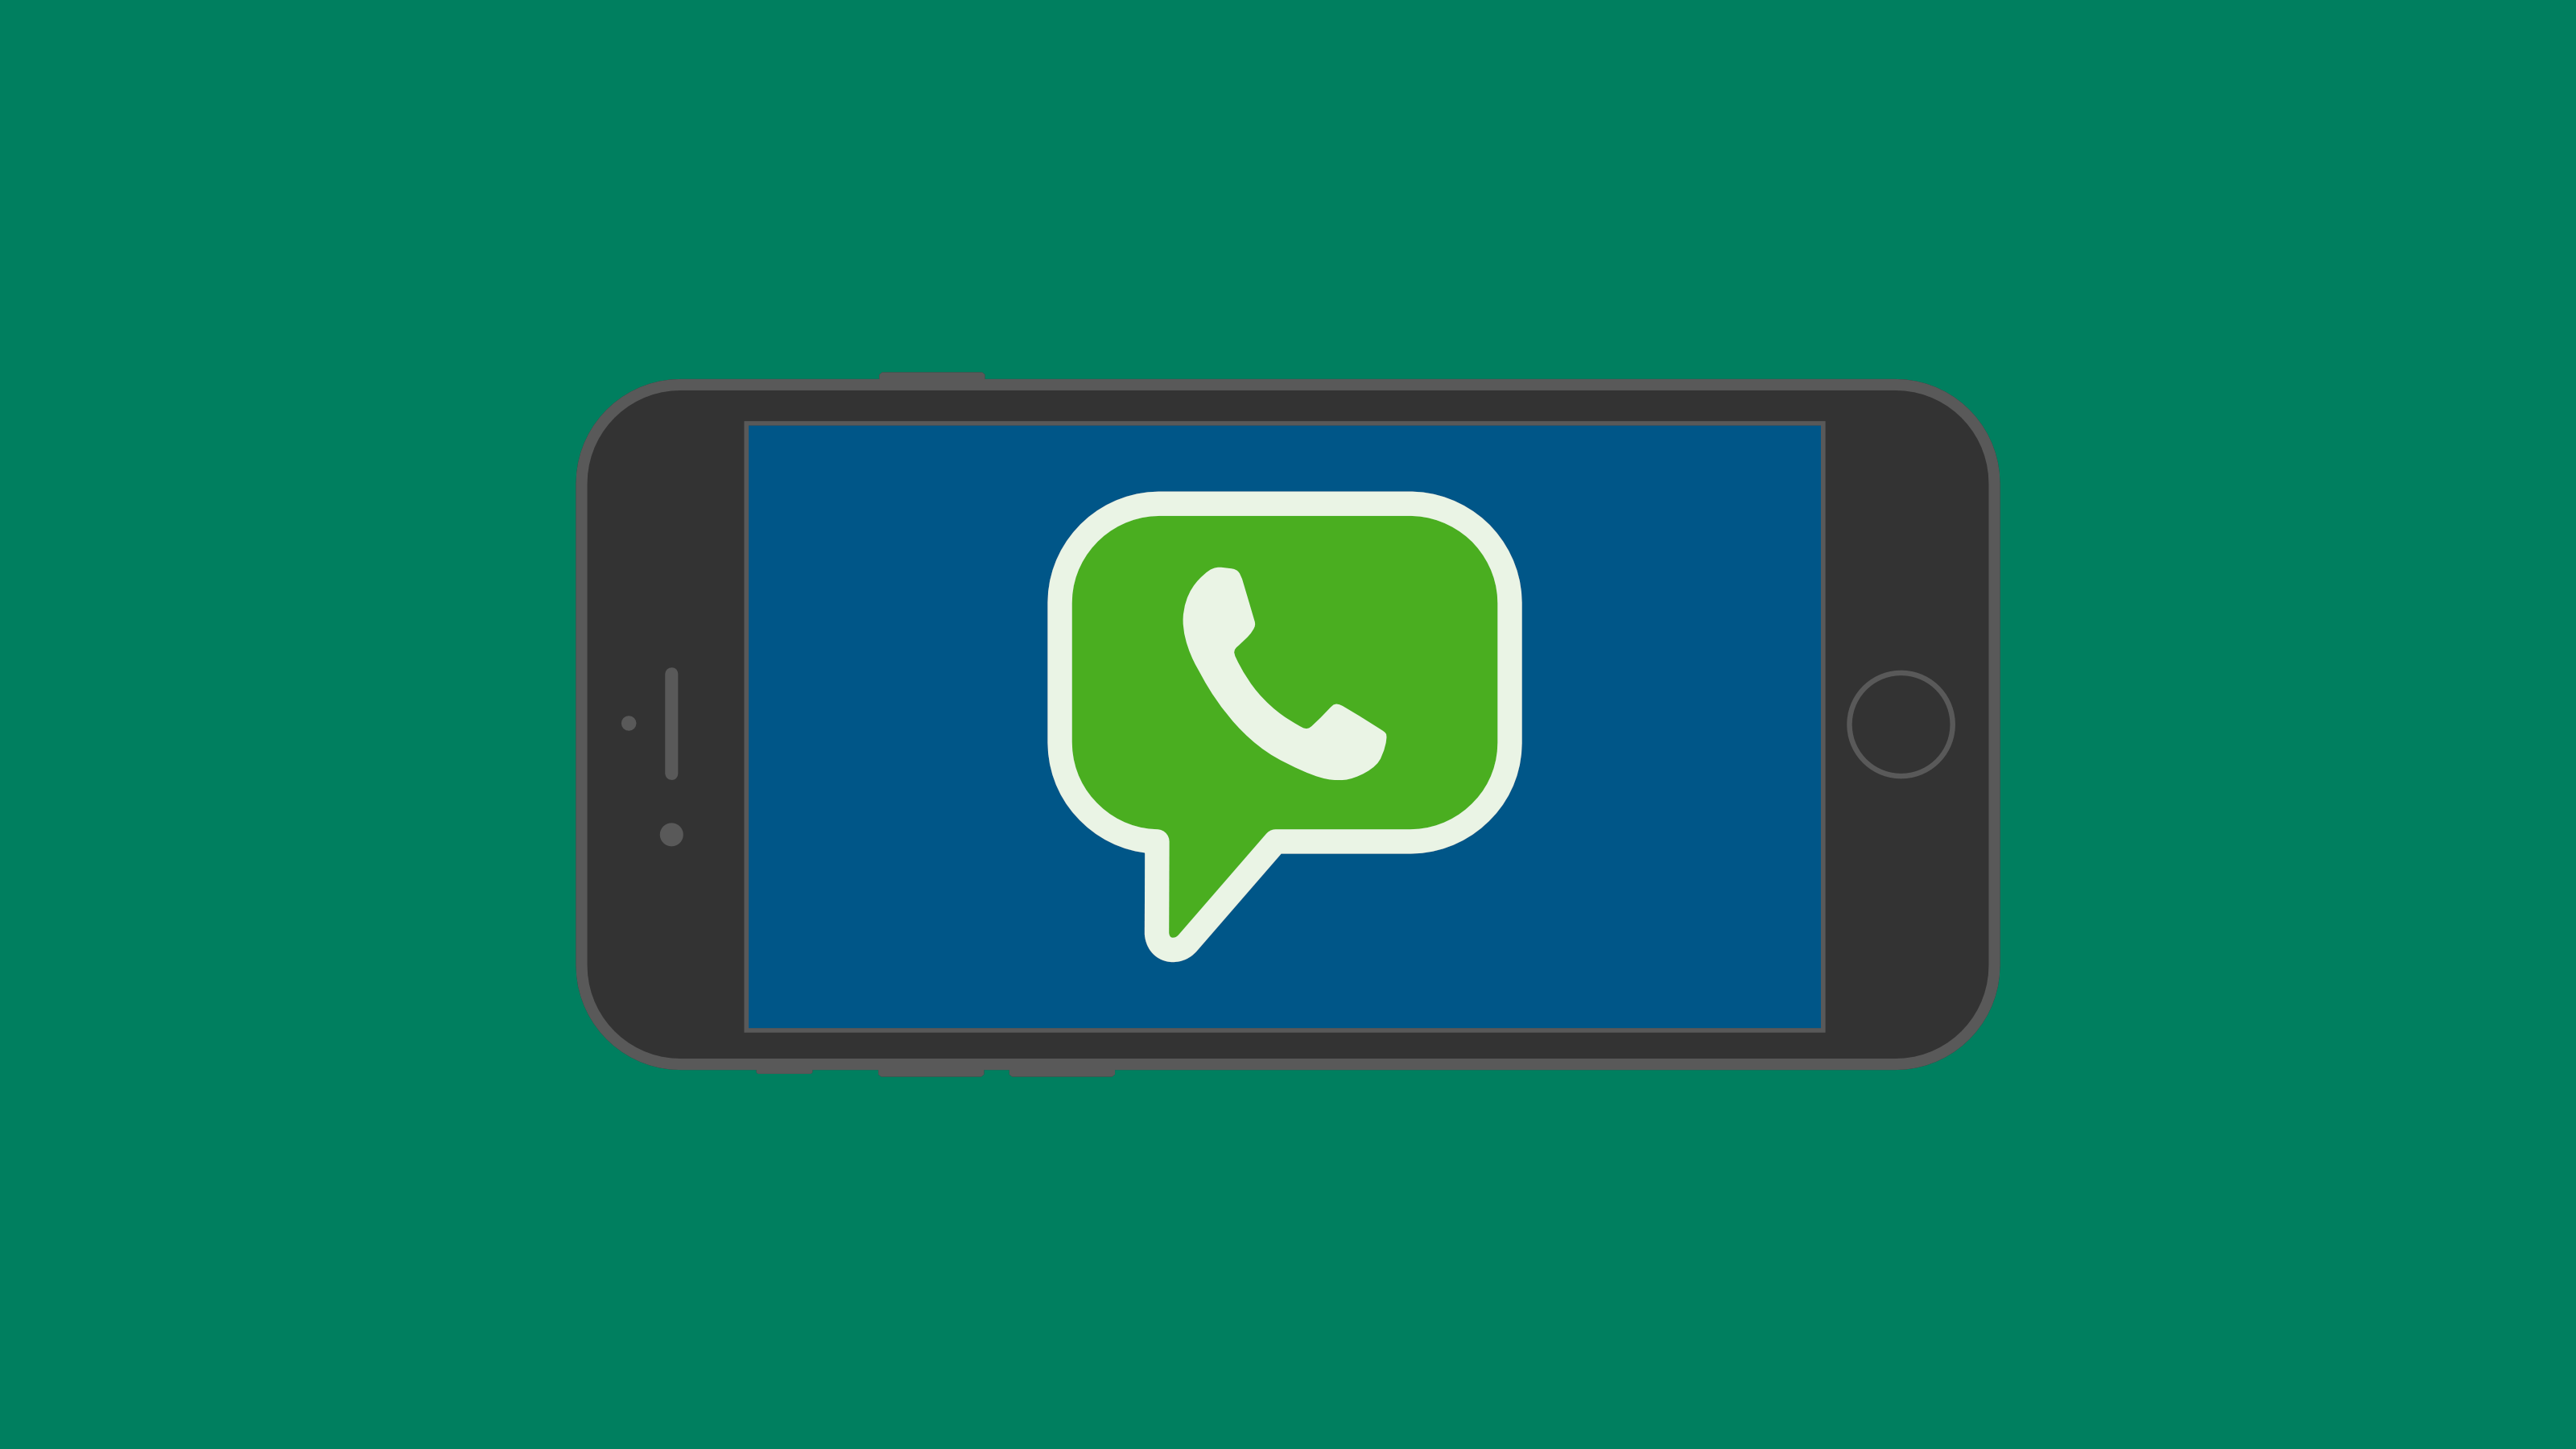 Green Messaging Logo - Messaging Apps & Brands: WhatsApp Messenger | MessengerPeople